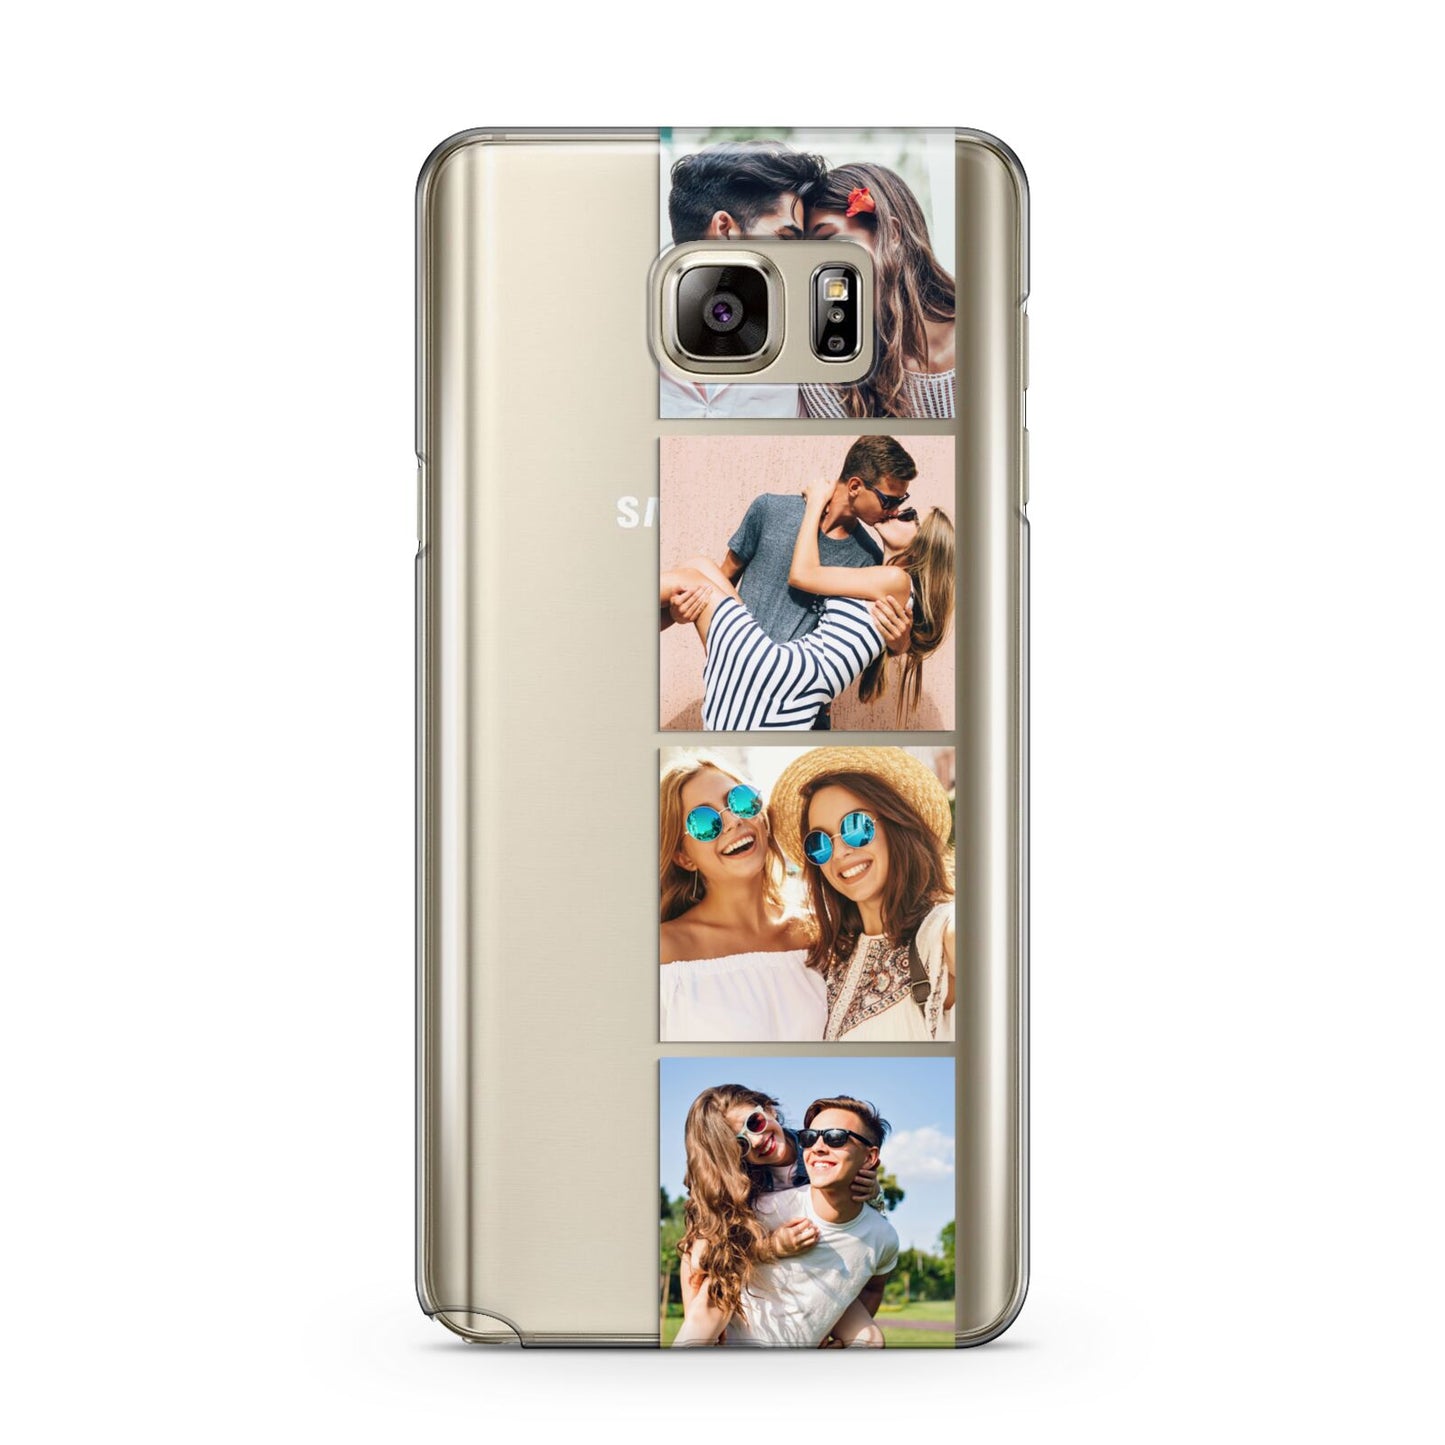 Photo Strip Montage Upload Samsung Galaxy Note 5 Case